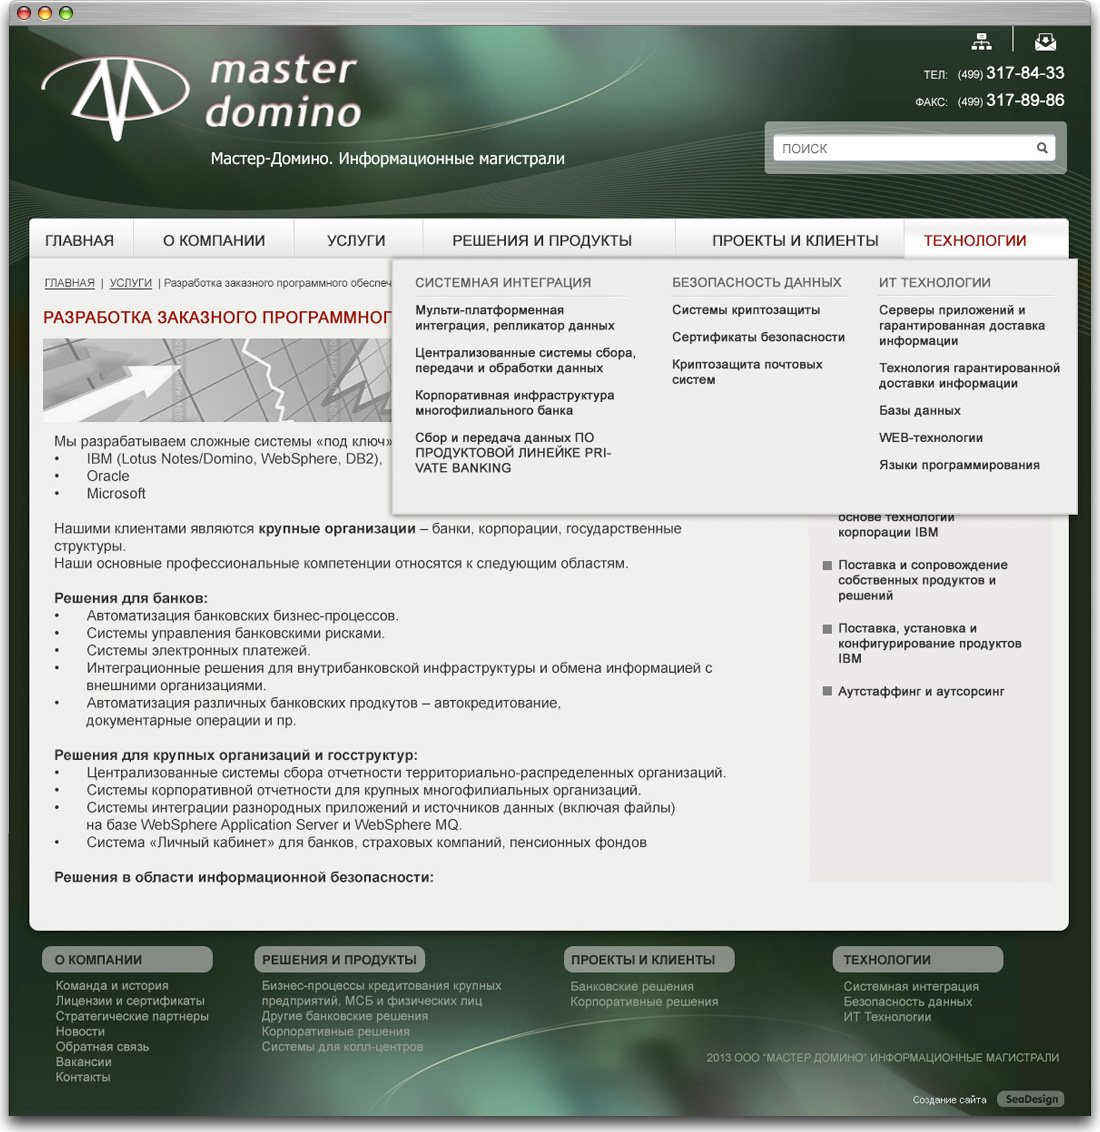 Дизайн контентной страницы сайта "Мастер-Домино"